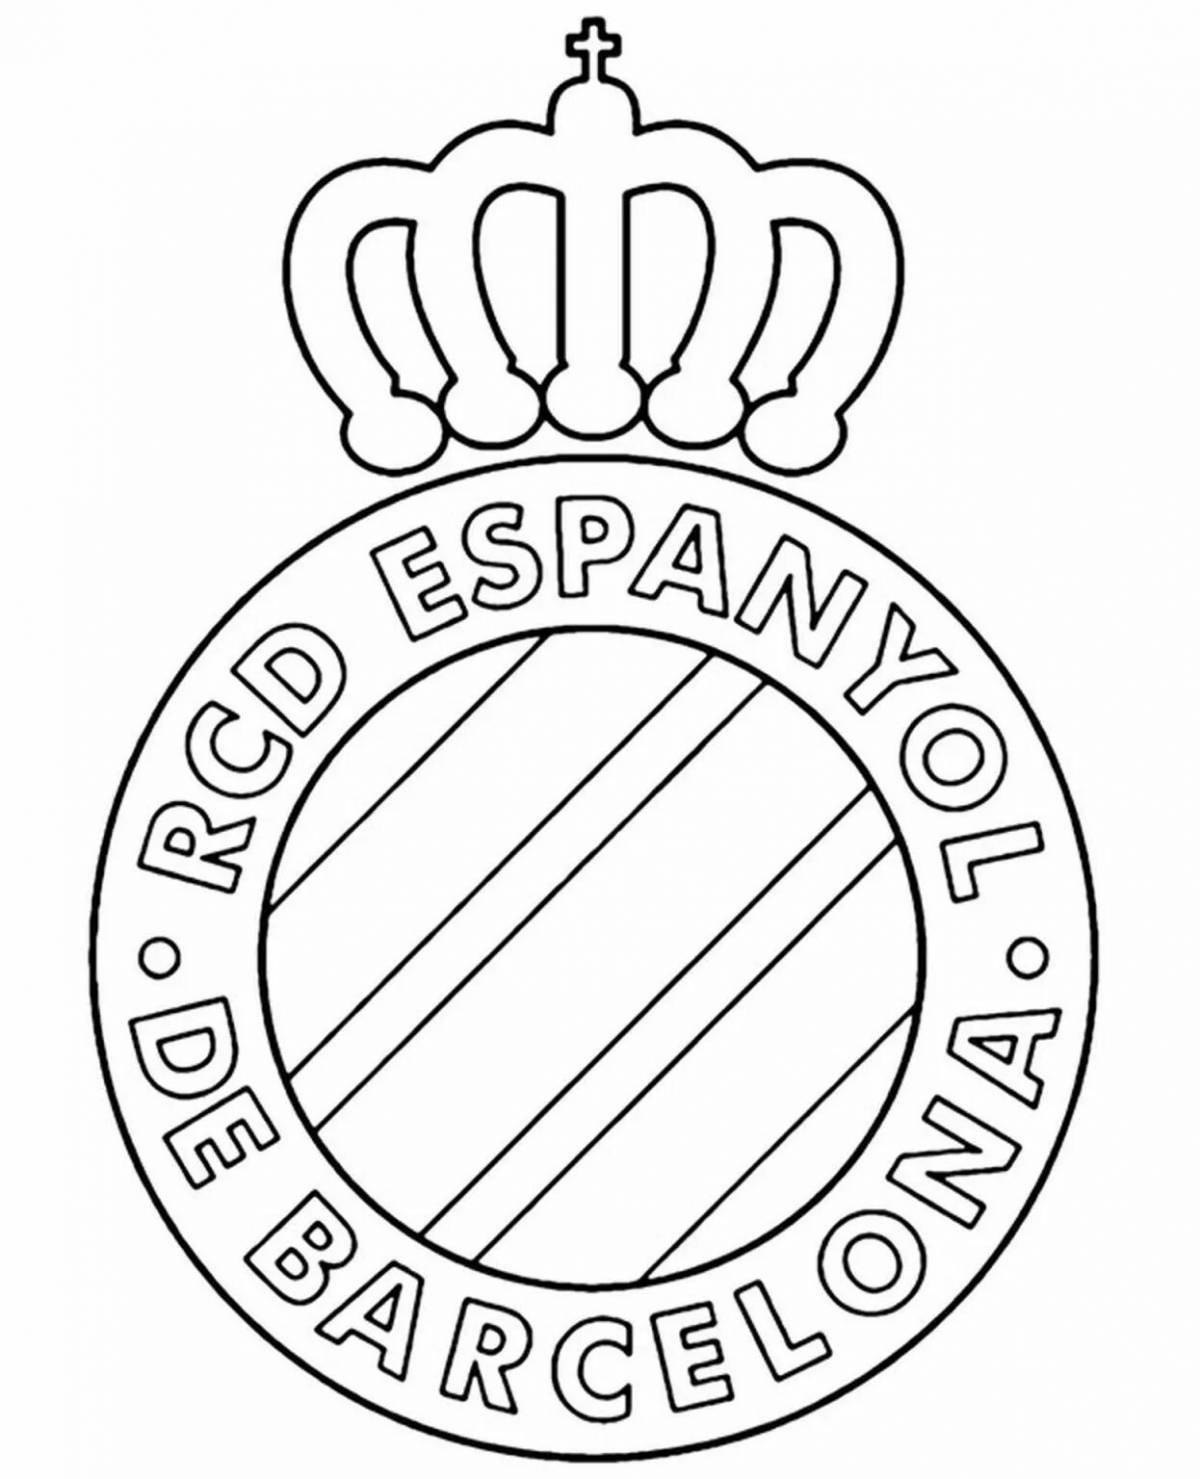 Раскраска с жирным логотипом псж